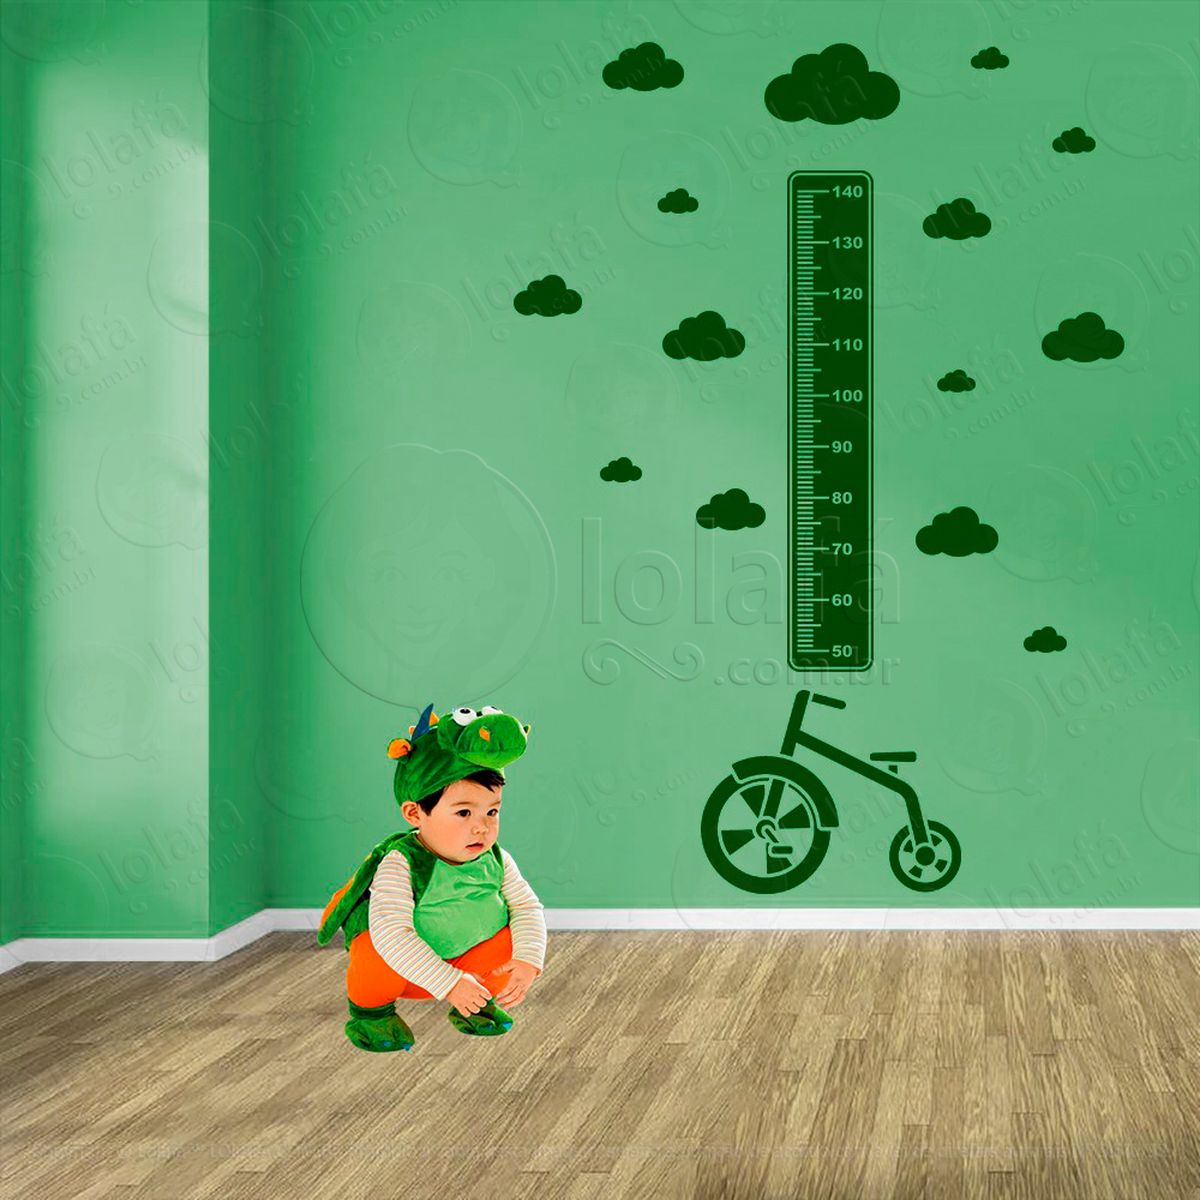 bicicleta e nuvens adesivo régua de crescimento infantil, medidor de altura para quarto, porta e parede - mod:1321